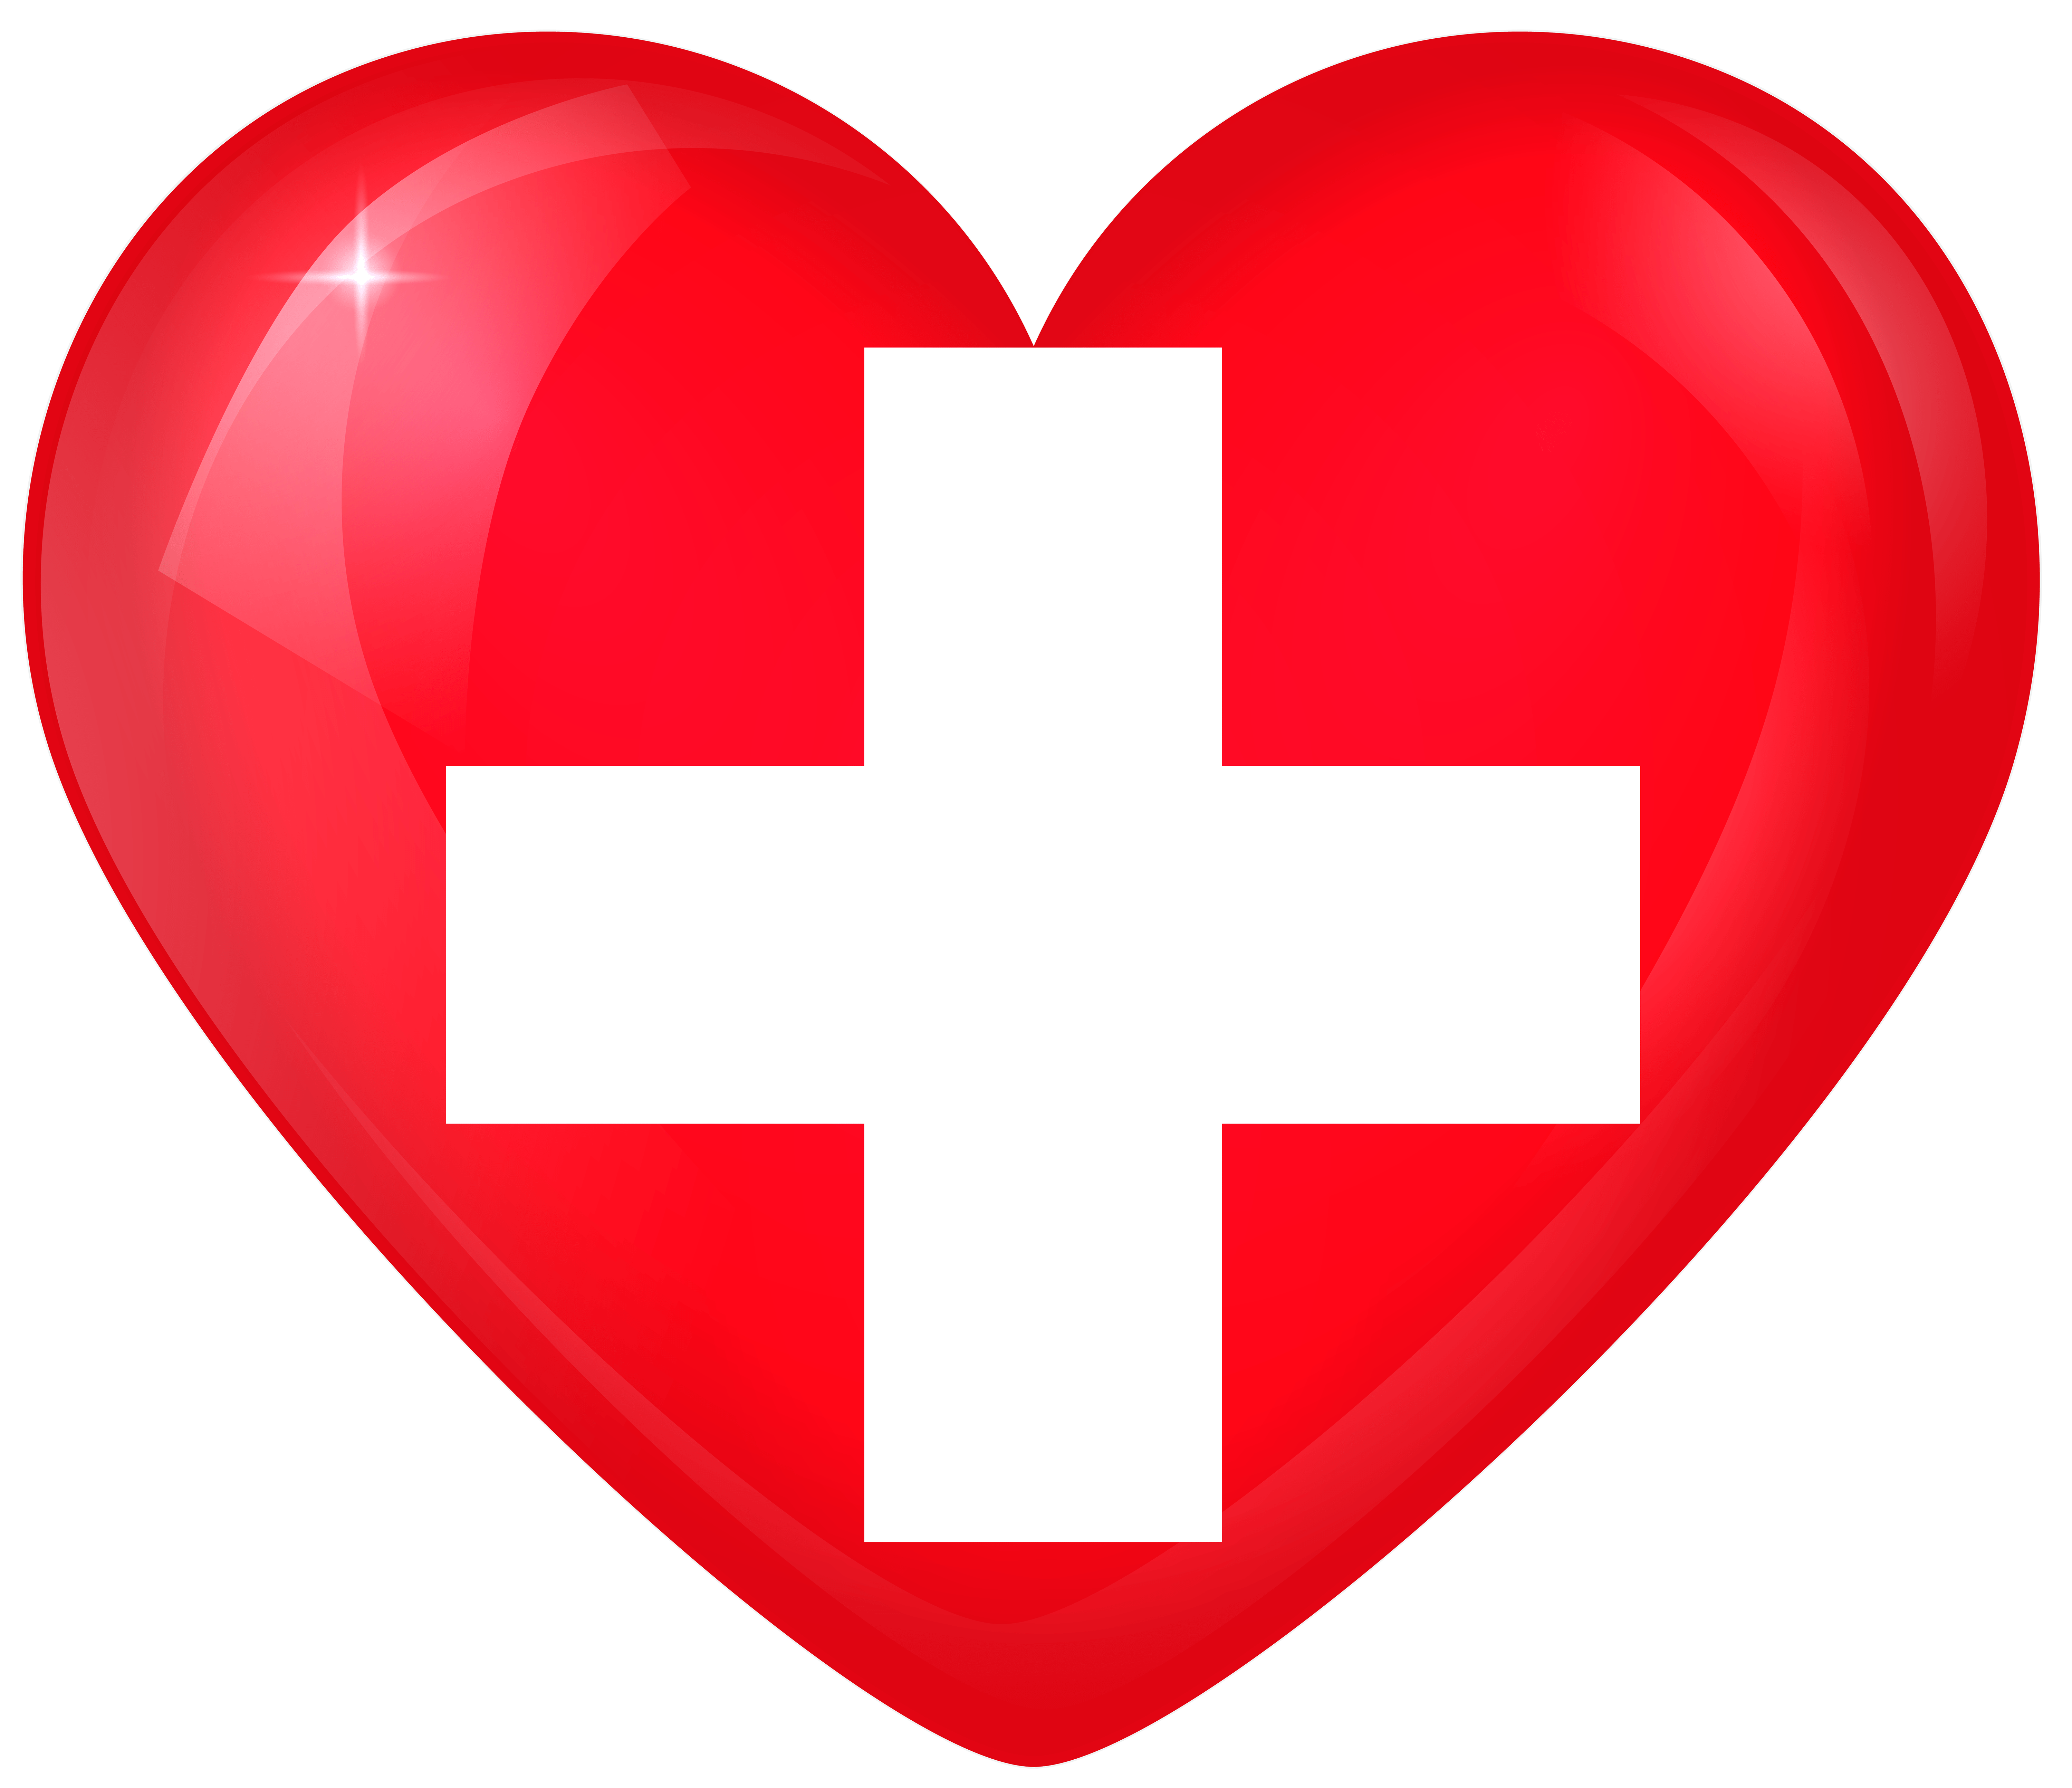 Switzerland Large Heart Flag Quality